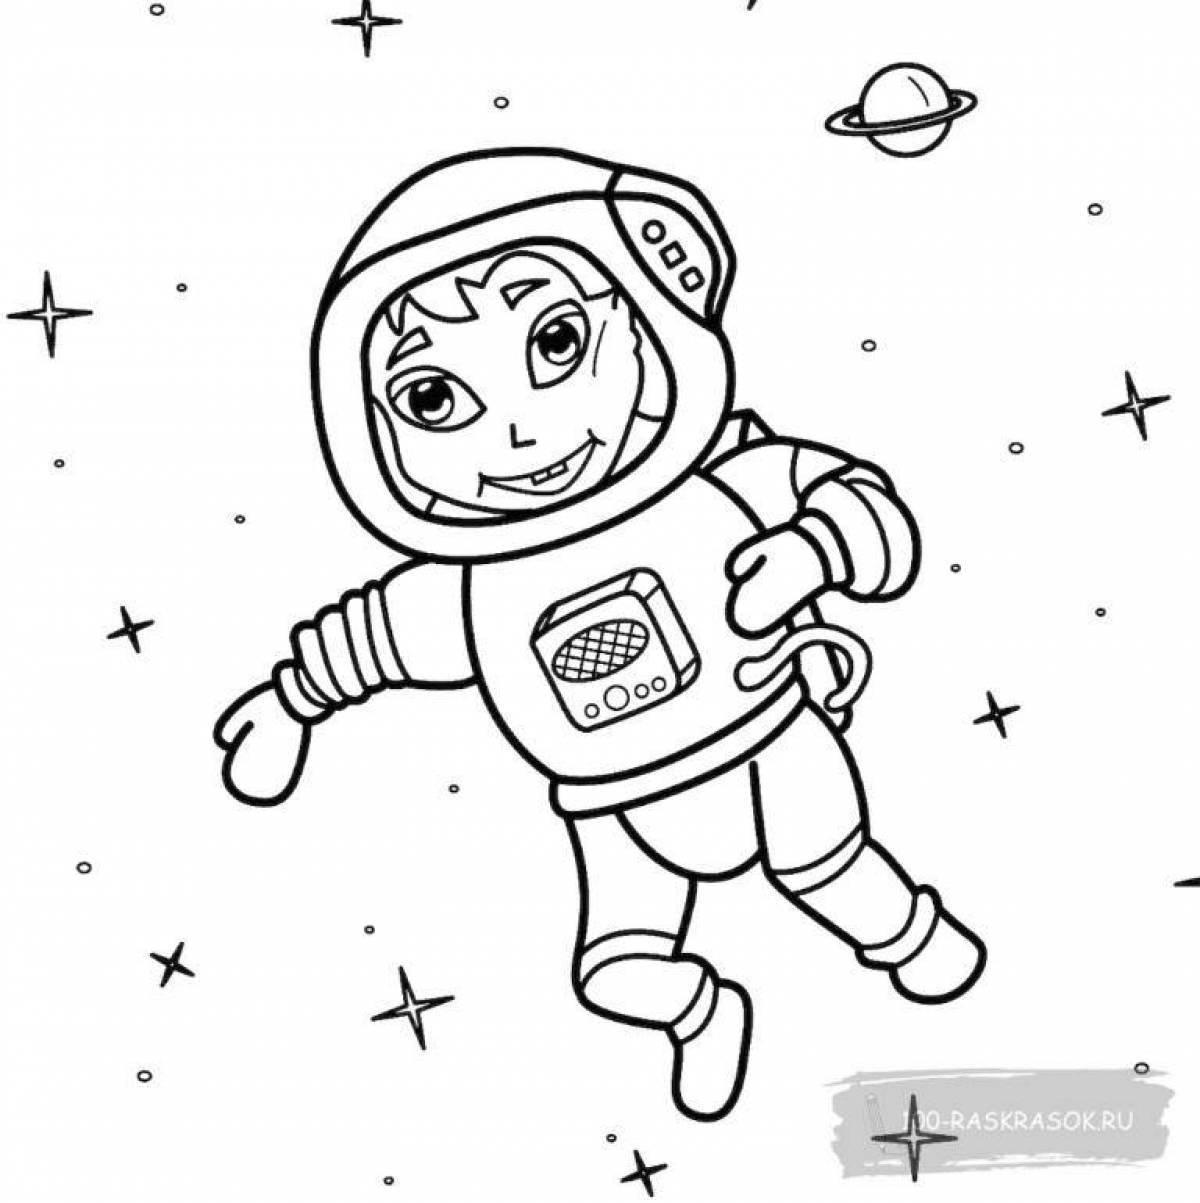 Увлекательная раскраска космонавта для детей